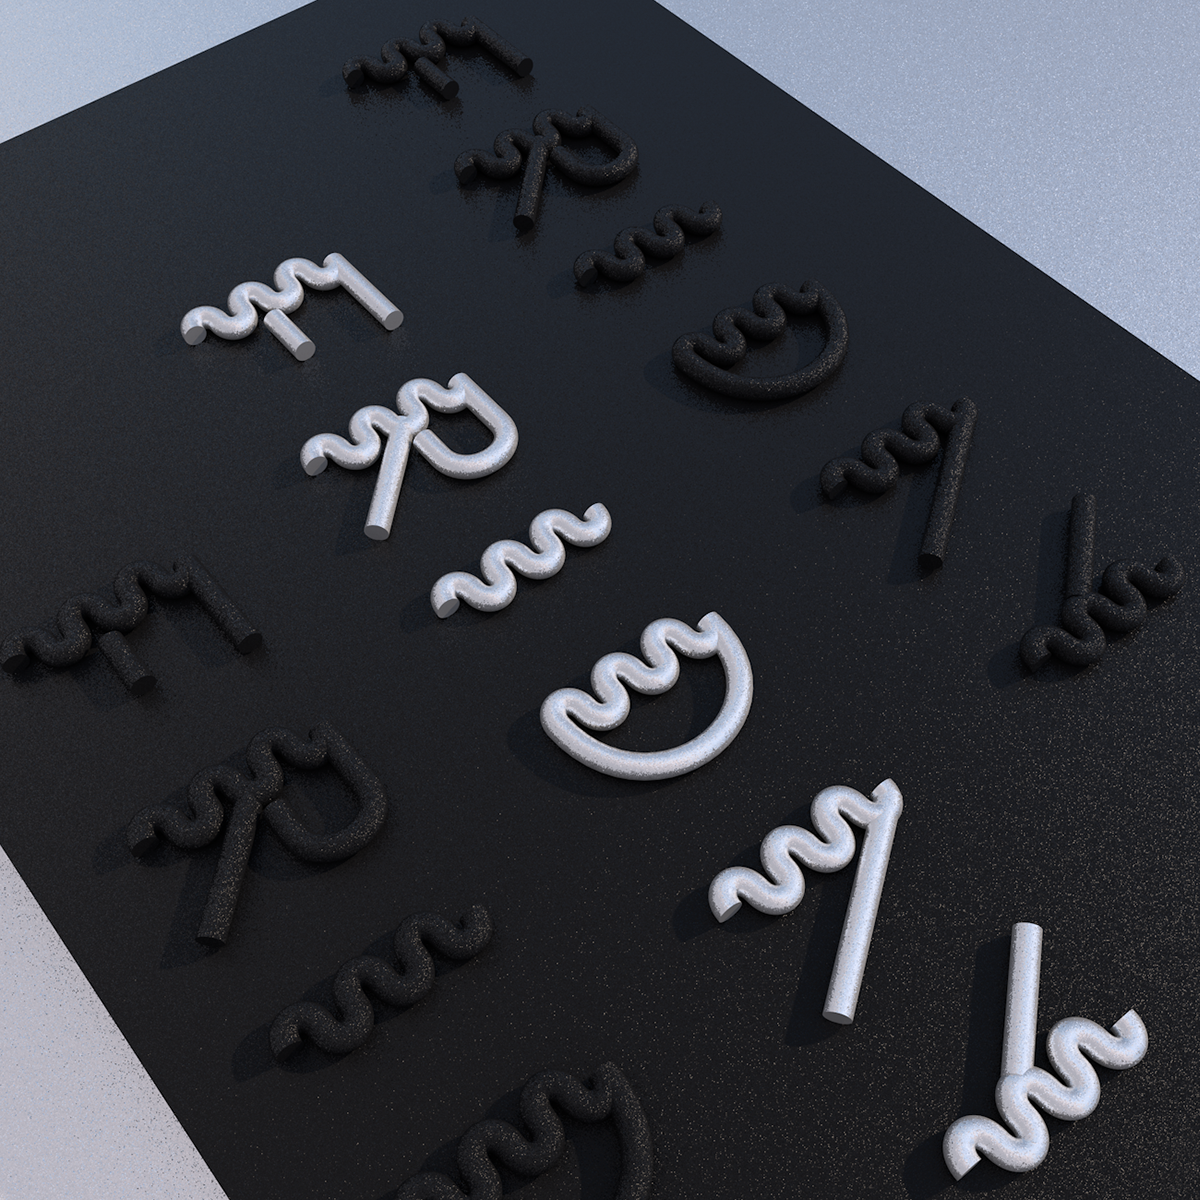 3D lettering type c4d maxon CGI Render cinema4d